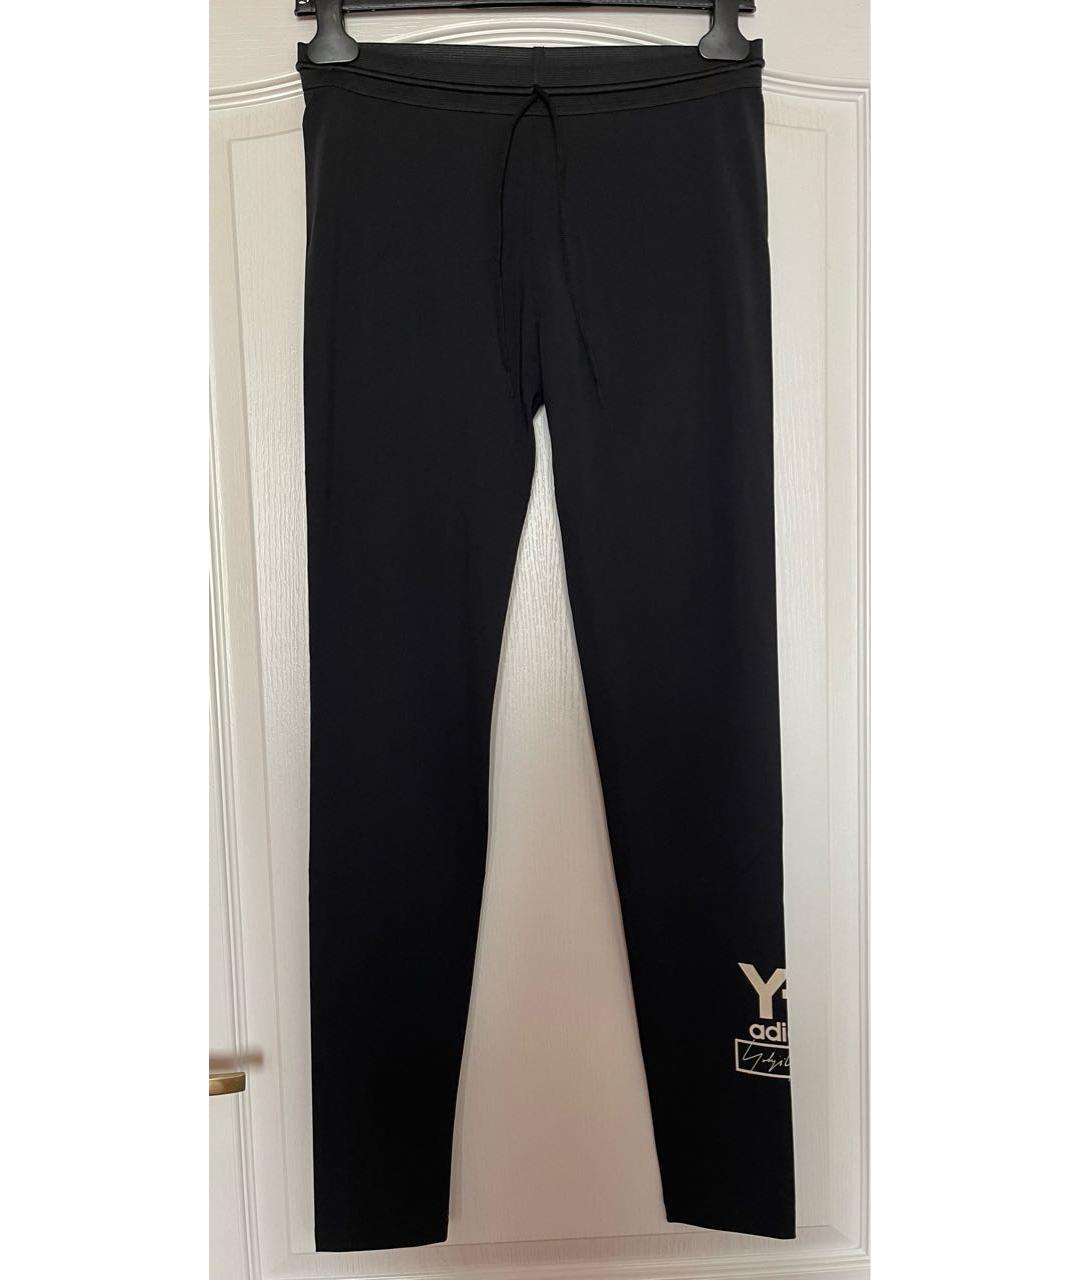 Y-3 Черные полиамидовые спортивные брюки и шорты, фото 2